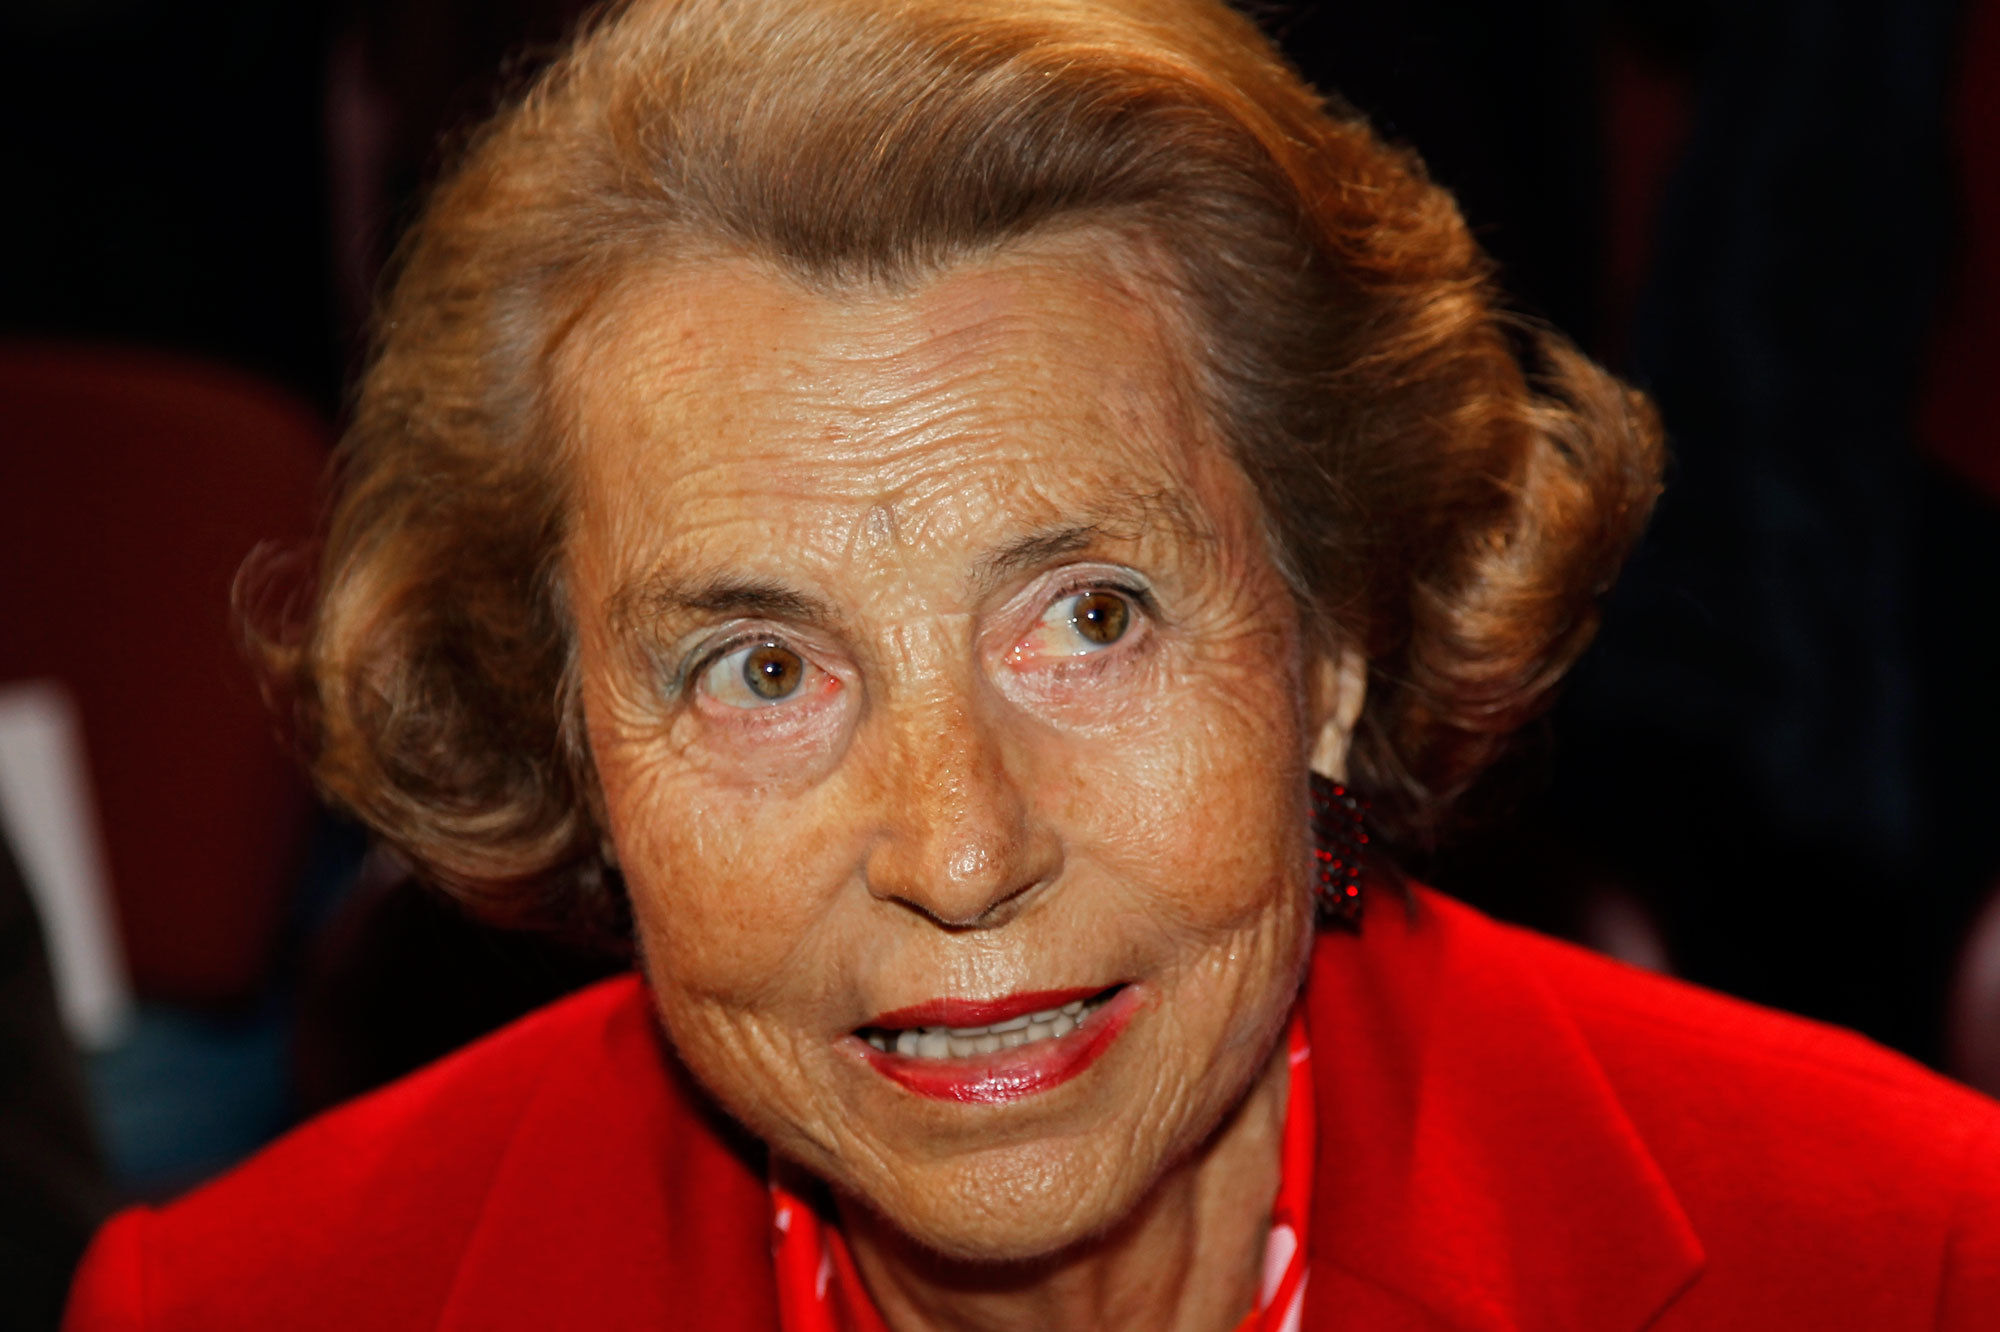 Liliane Bettencourt, Richest Woman in the World Dies at 94